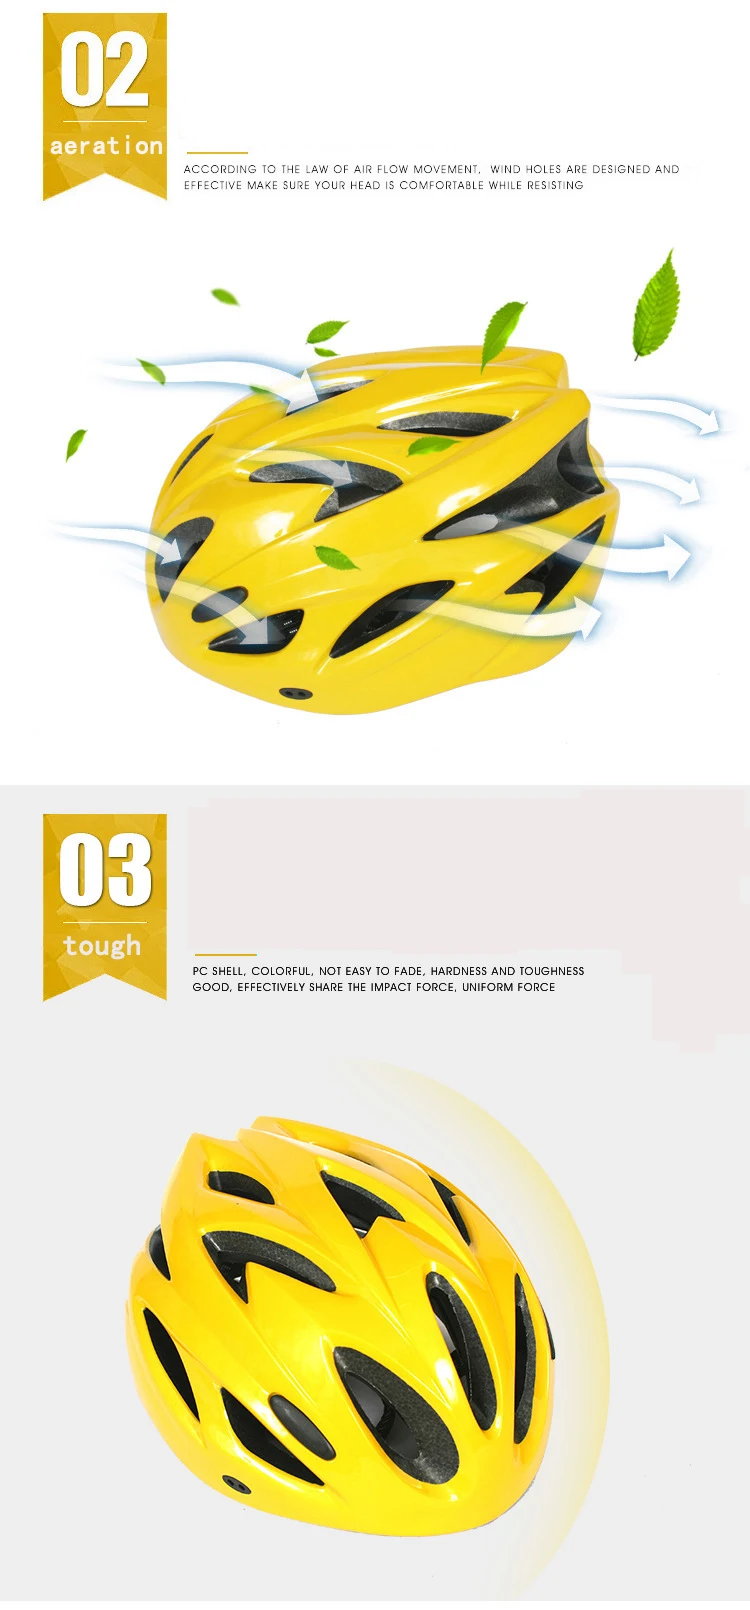 Ультра-легкий безопасный спортивный велосипедный шлем дорожный велосипедный шлем горный велосипед MTB гоночный велоспорт 22 Отверстия Шлем 57-62 см